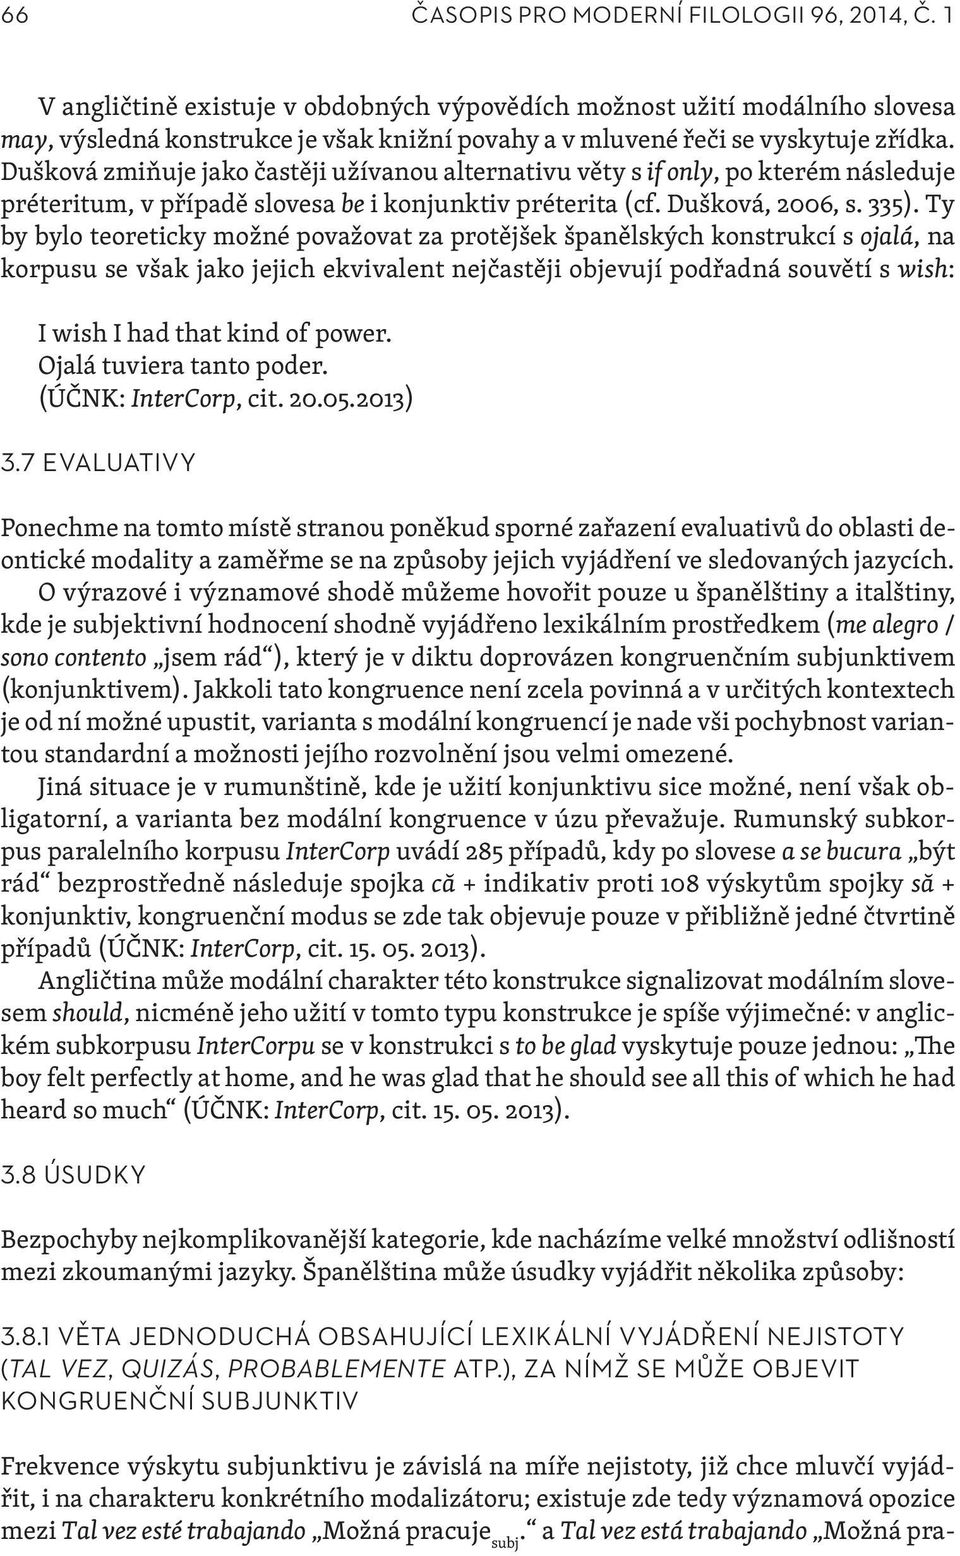 Dušková zmiňuje jako častěji užívanou alternativu věty s if only, po kterém následuje préteritum, v případě slovesa be i konjunktiv préterita (cf. Dušková, 2006, s. 335).